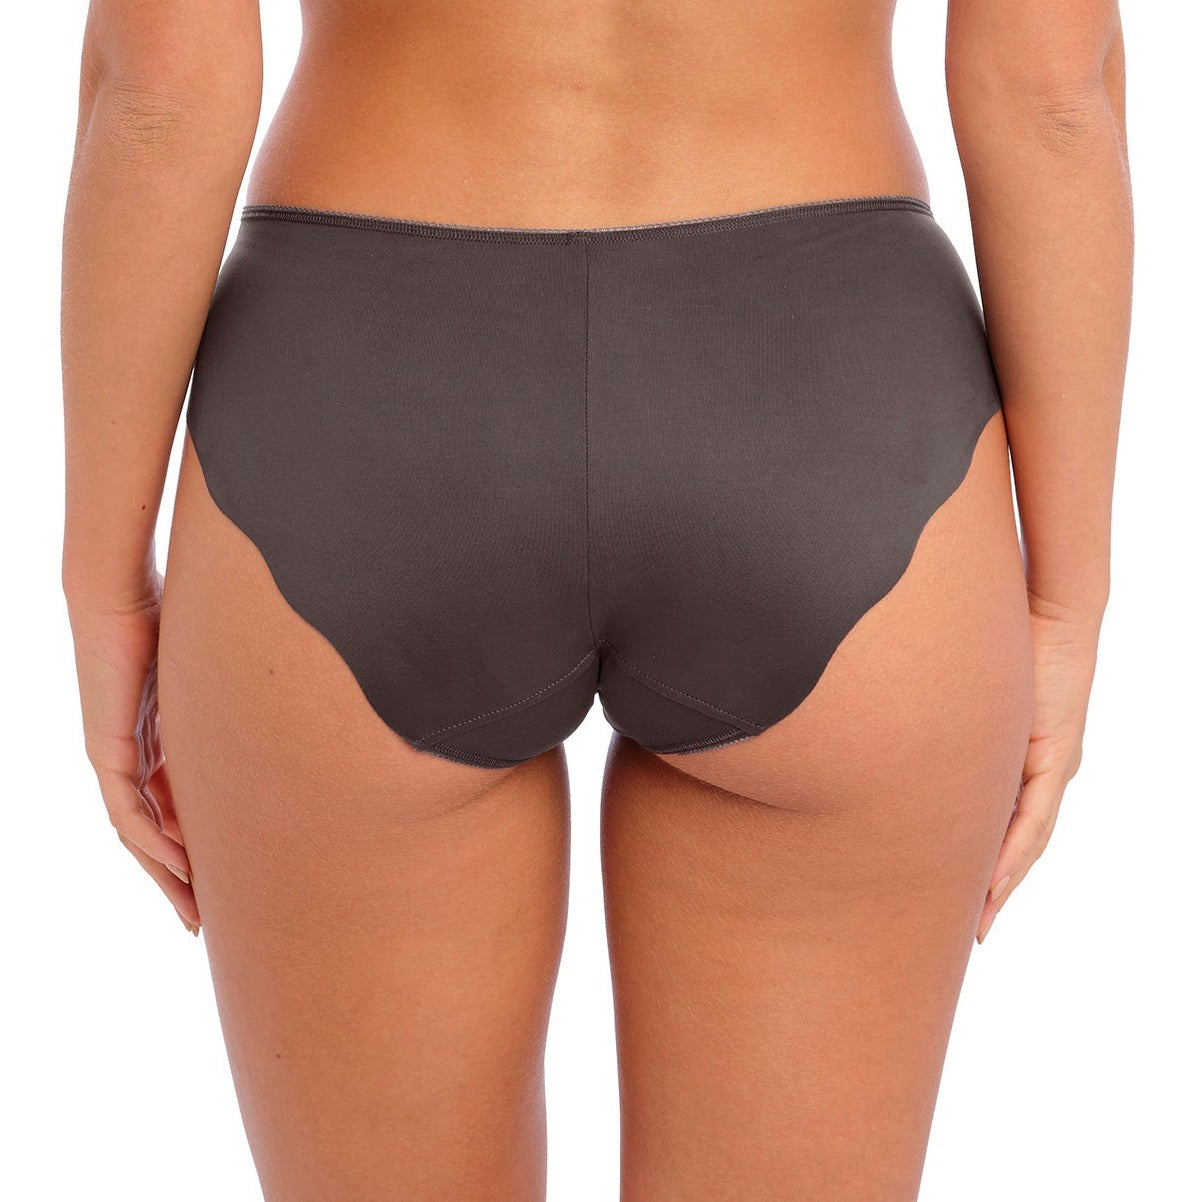 Adrienne Brief - FL102250 - Charcoal Bras & Lingerie - Underwear - Brief Fantasie Lingerie   